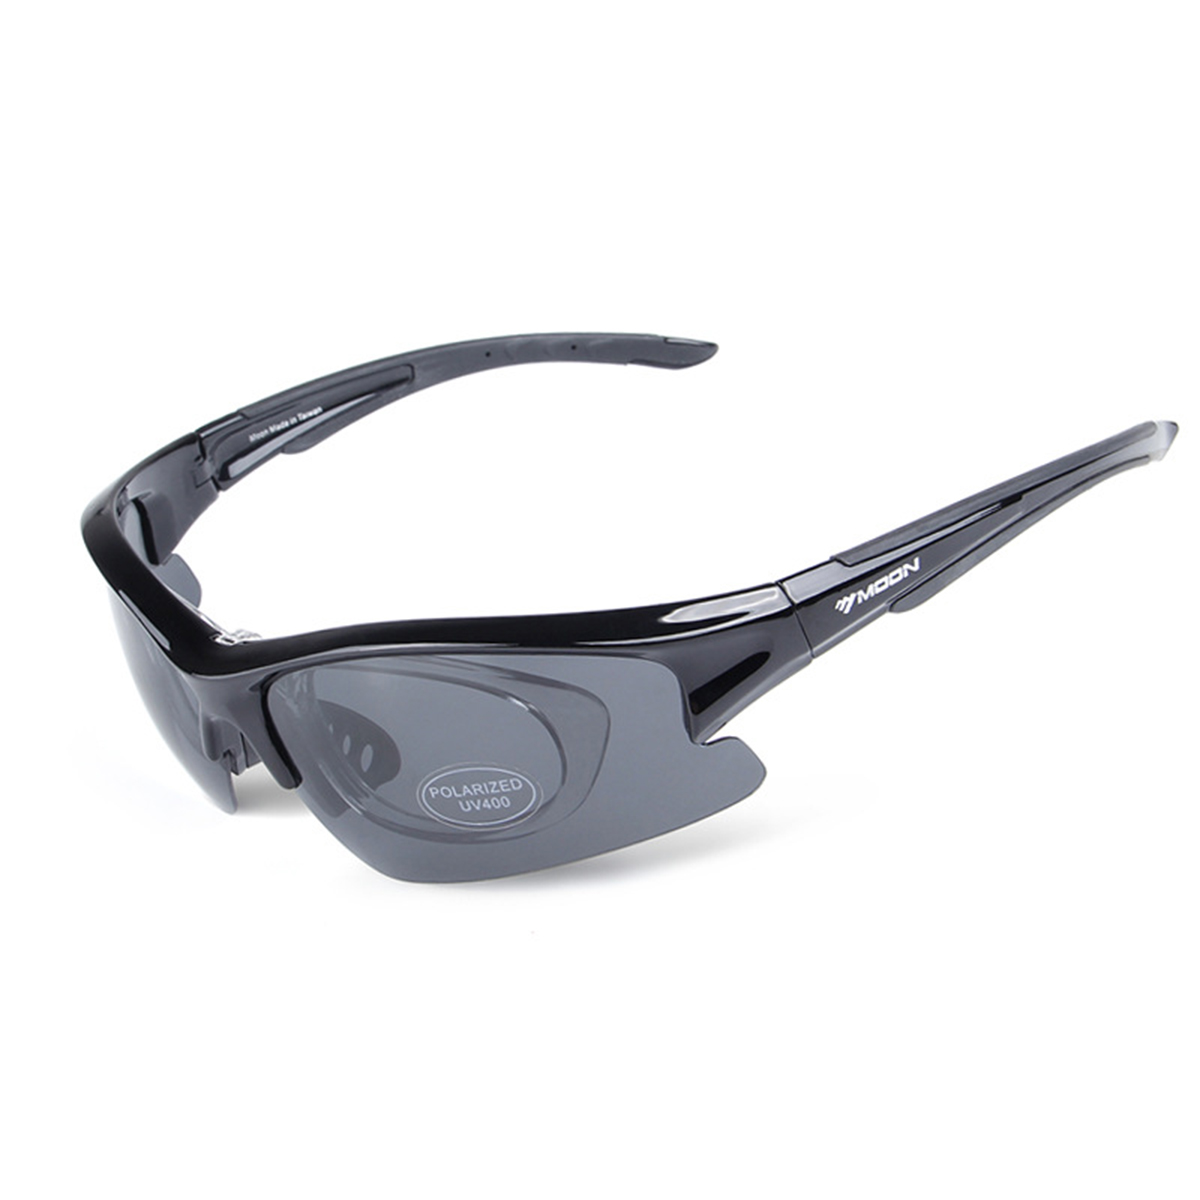 Schwarz LEIGO Fahrradbrille-Set, Fahrradbrillen, Fahrradbrille Radsportbrille, Mountainbike-Brille, Sonnenbrille